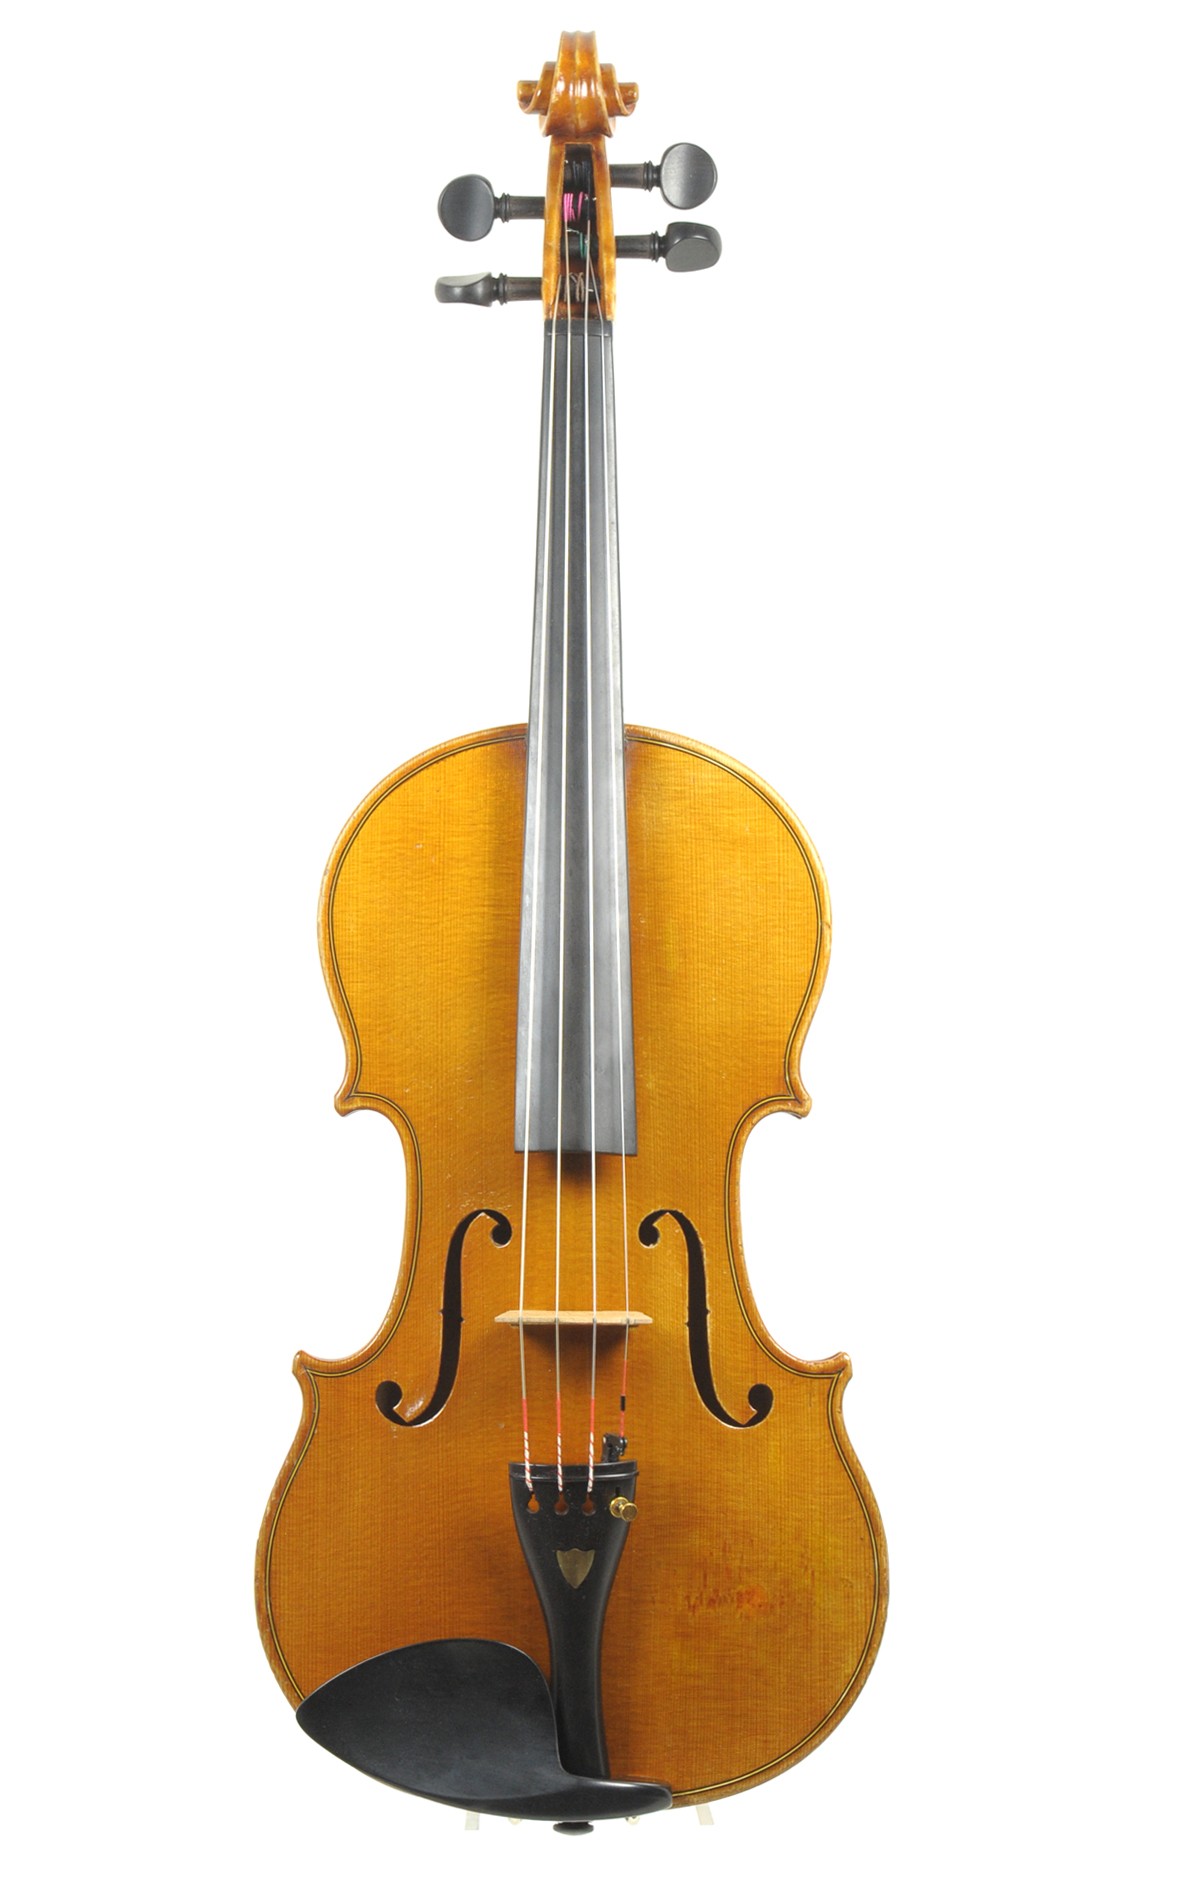 Markneukirchen master violin by August Hermann Braun - spruce table